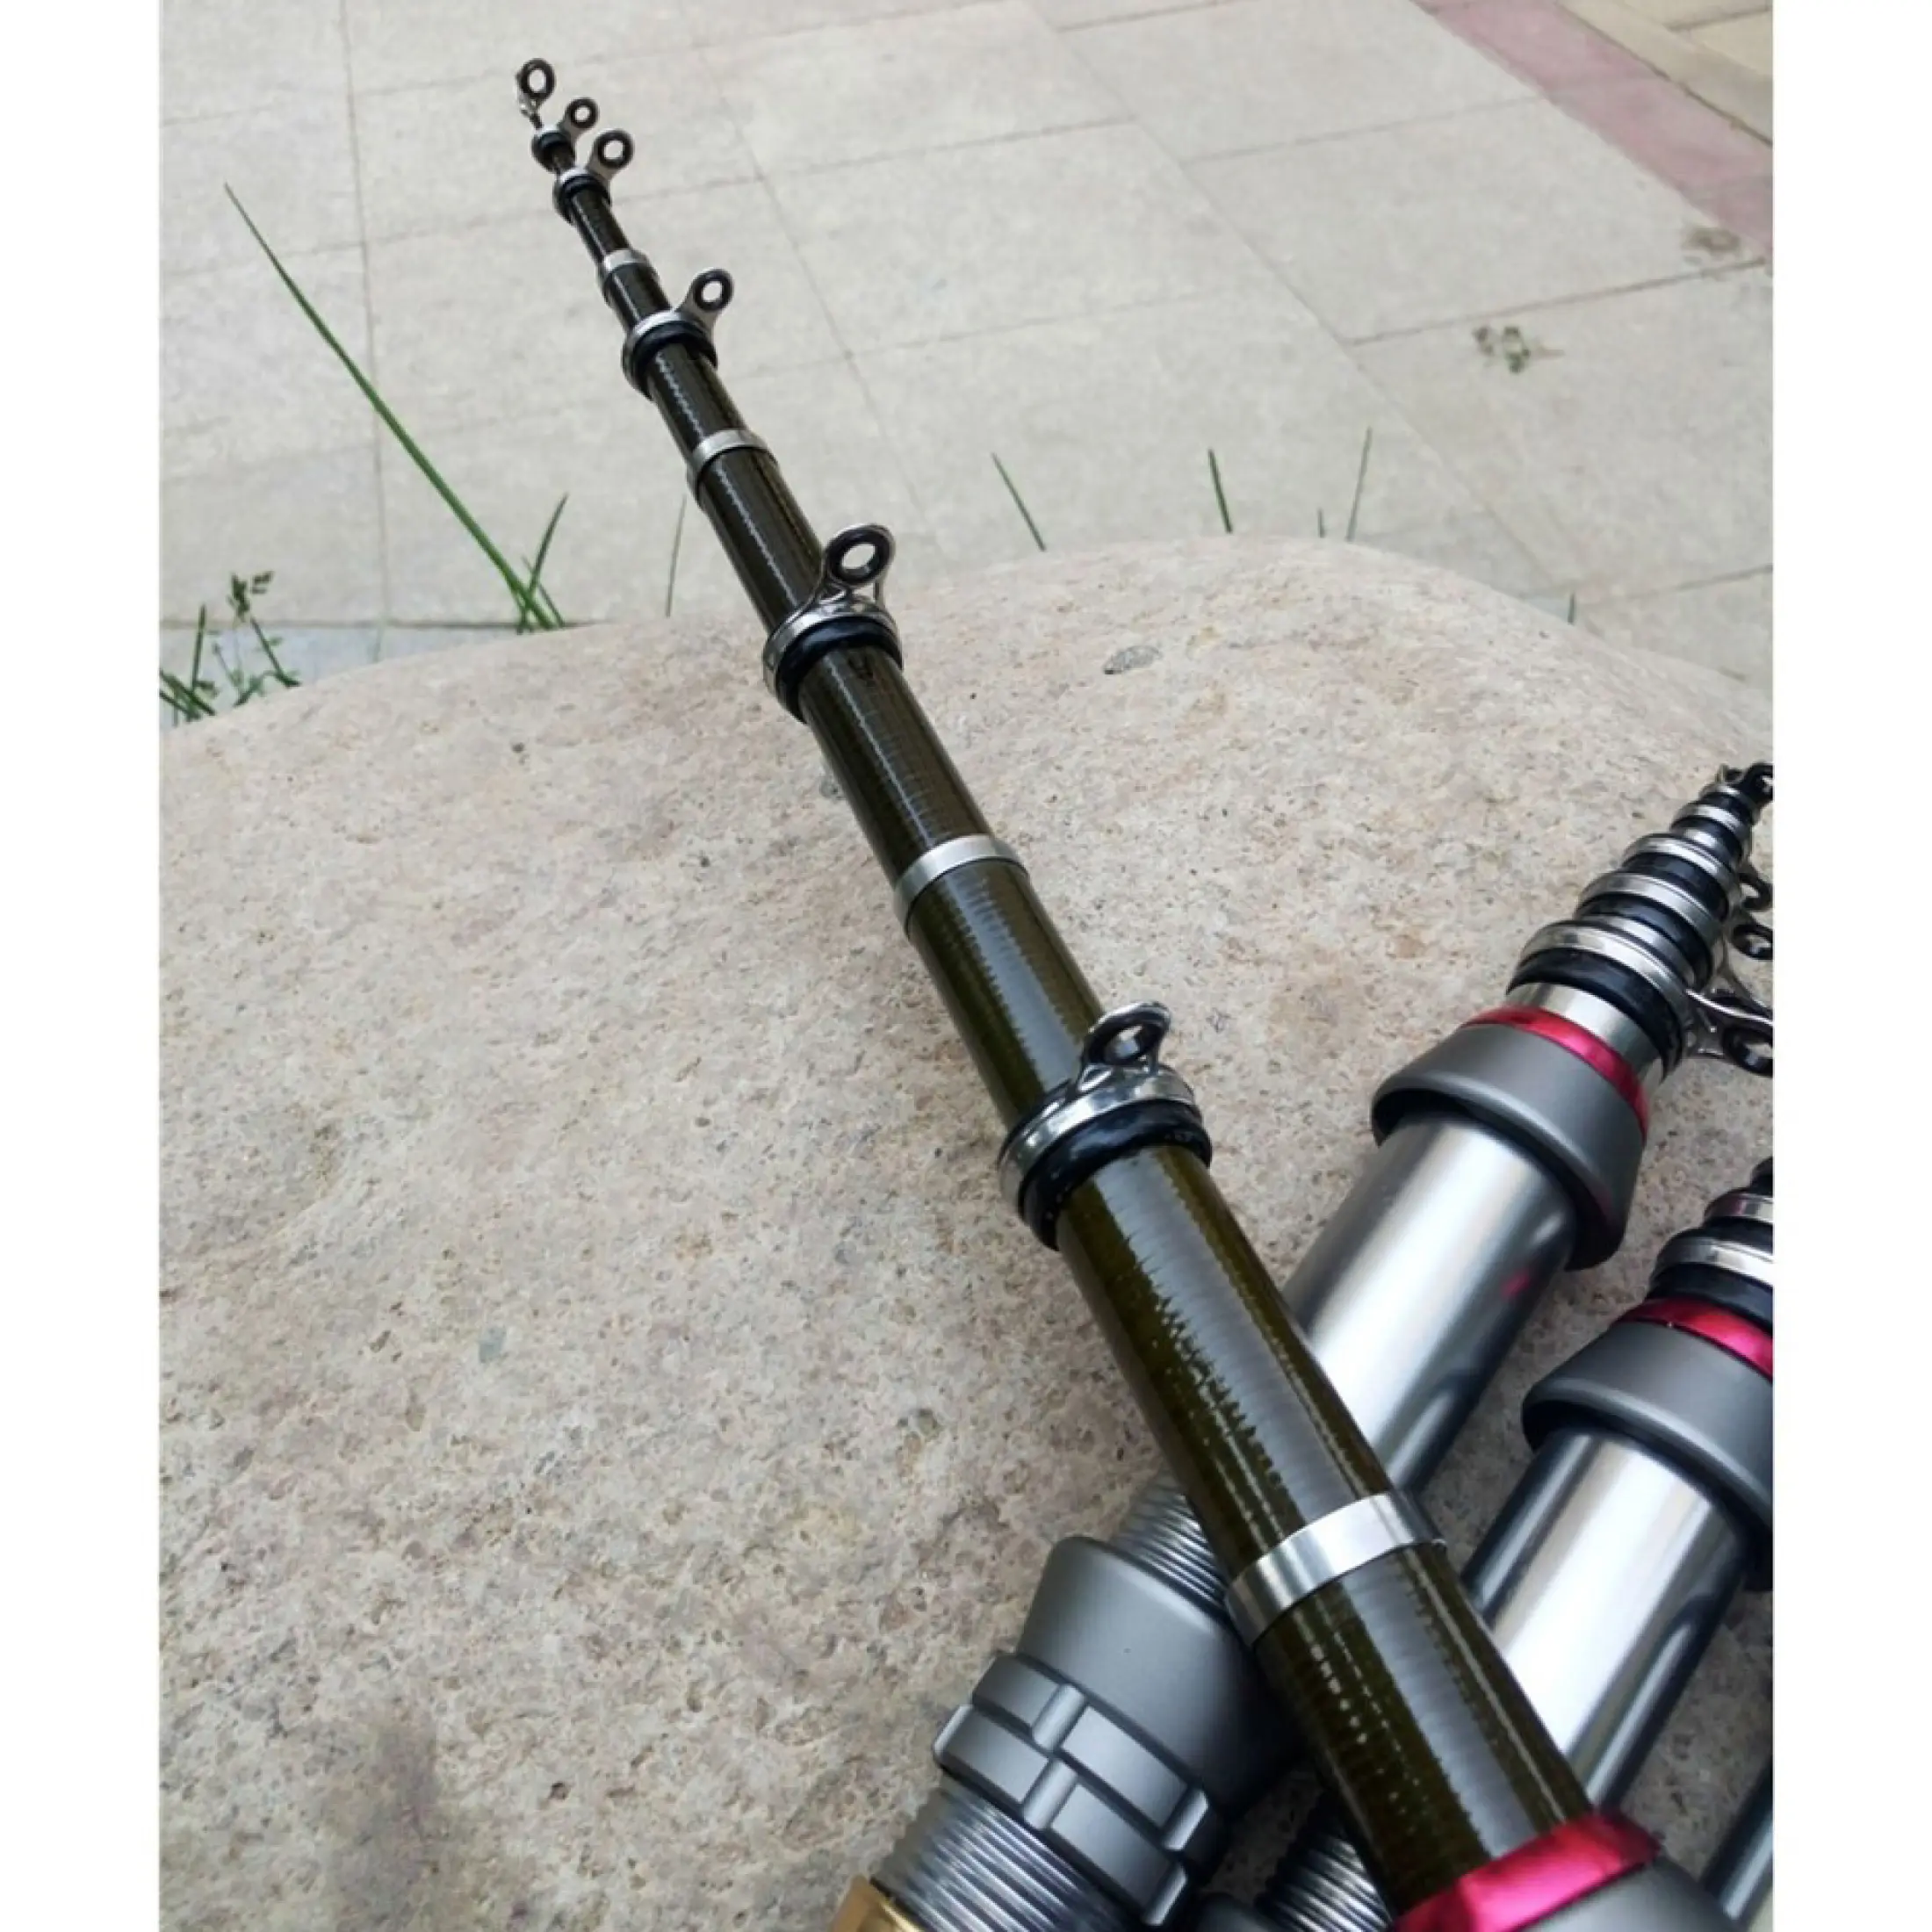 Bisa Cod Dk3000 1 8m Goture Joran Pancing Carbon Fiber Mini Pocket Fishing Rod 1 8m Pendek Ketika Di Simpan Panjang Ketika Di Gunakan Lazada Indonesia